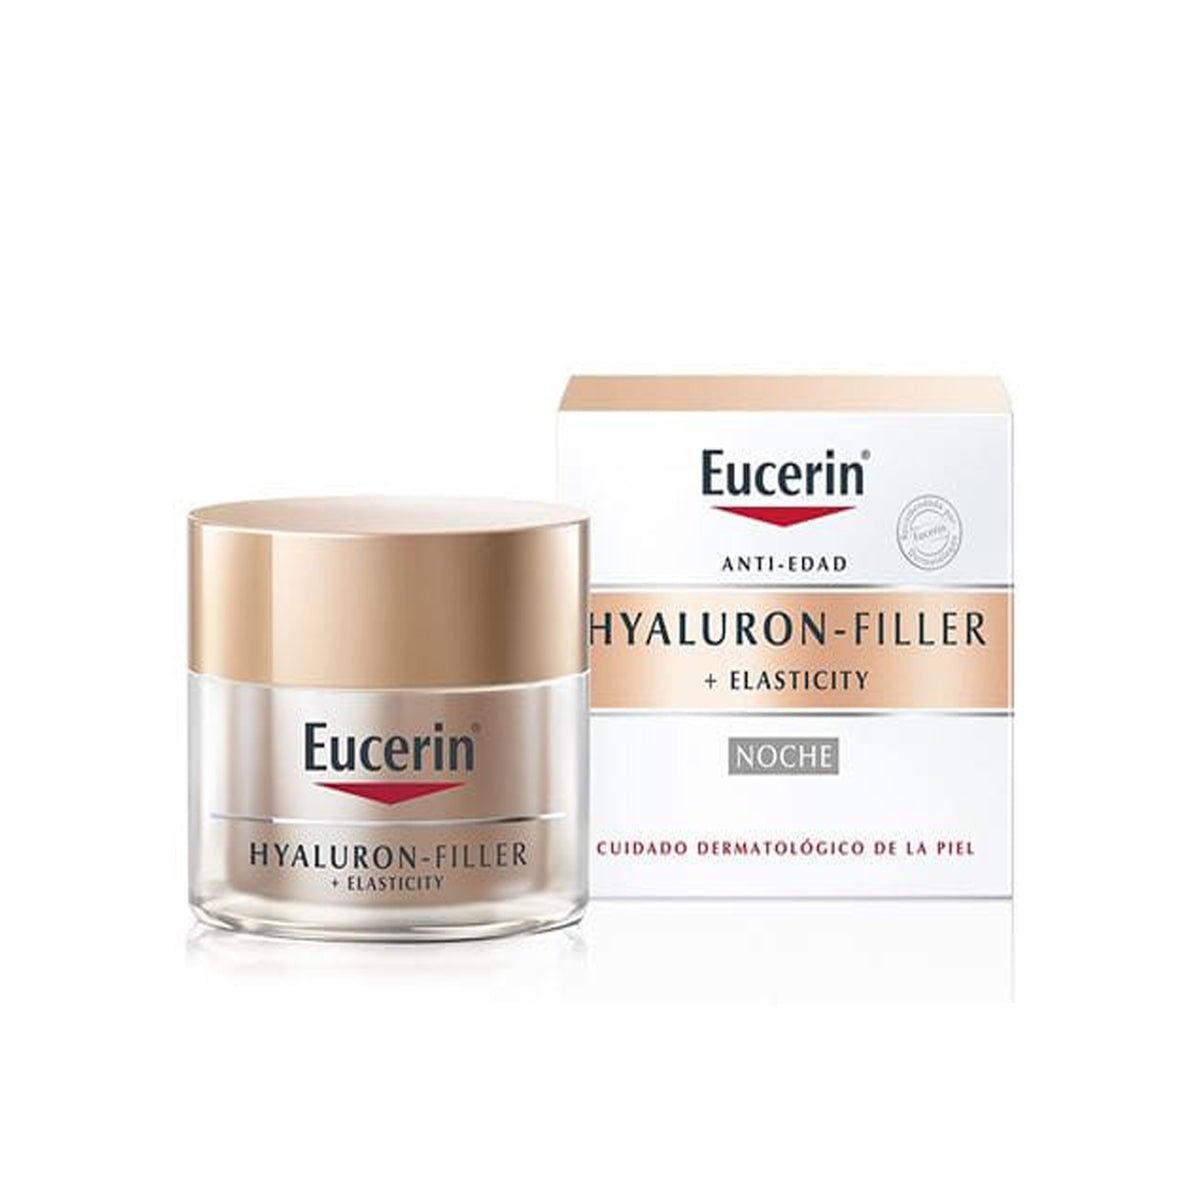 Eucerin Crema Facial Noche Hyaluron-Filler Elasticy